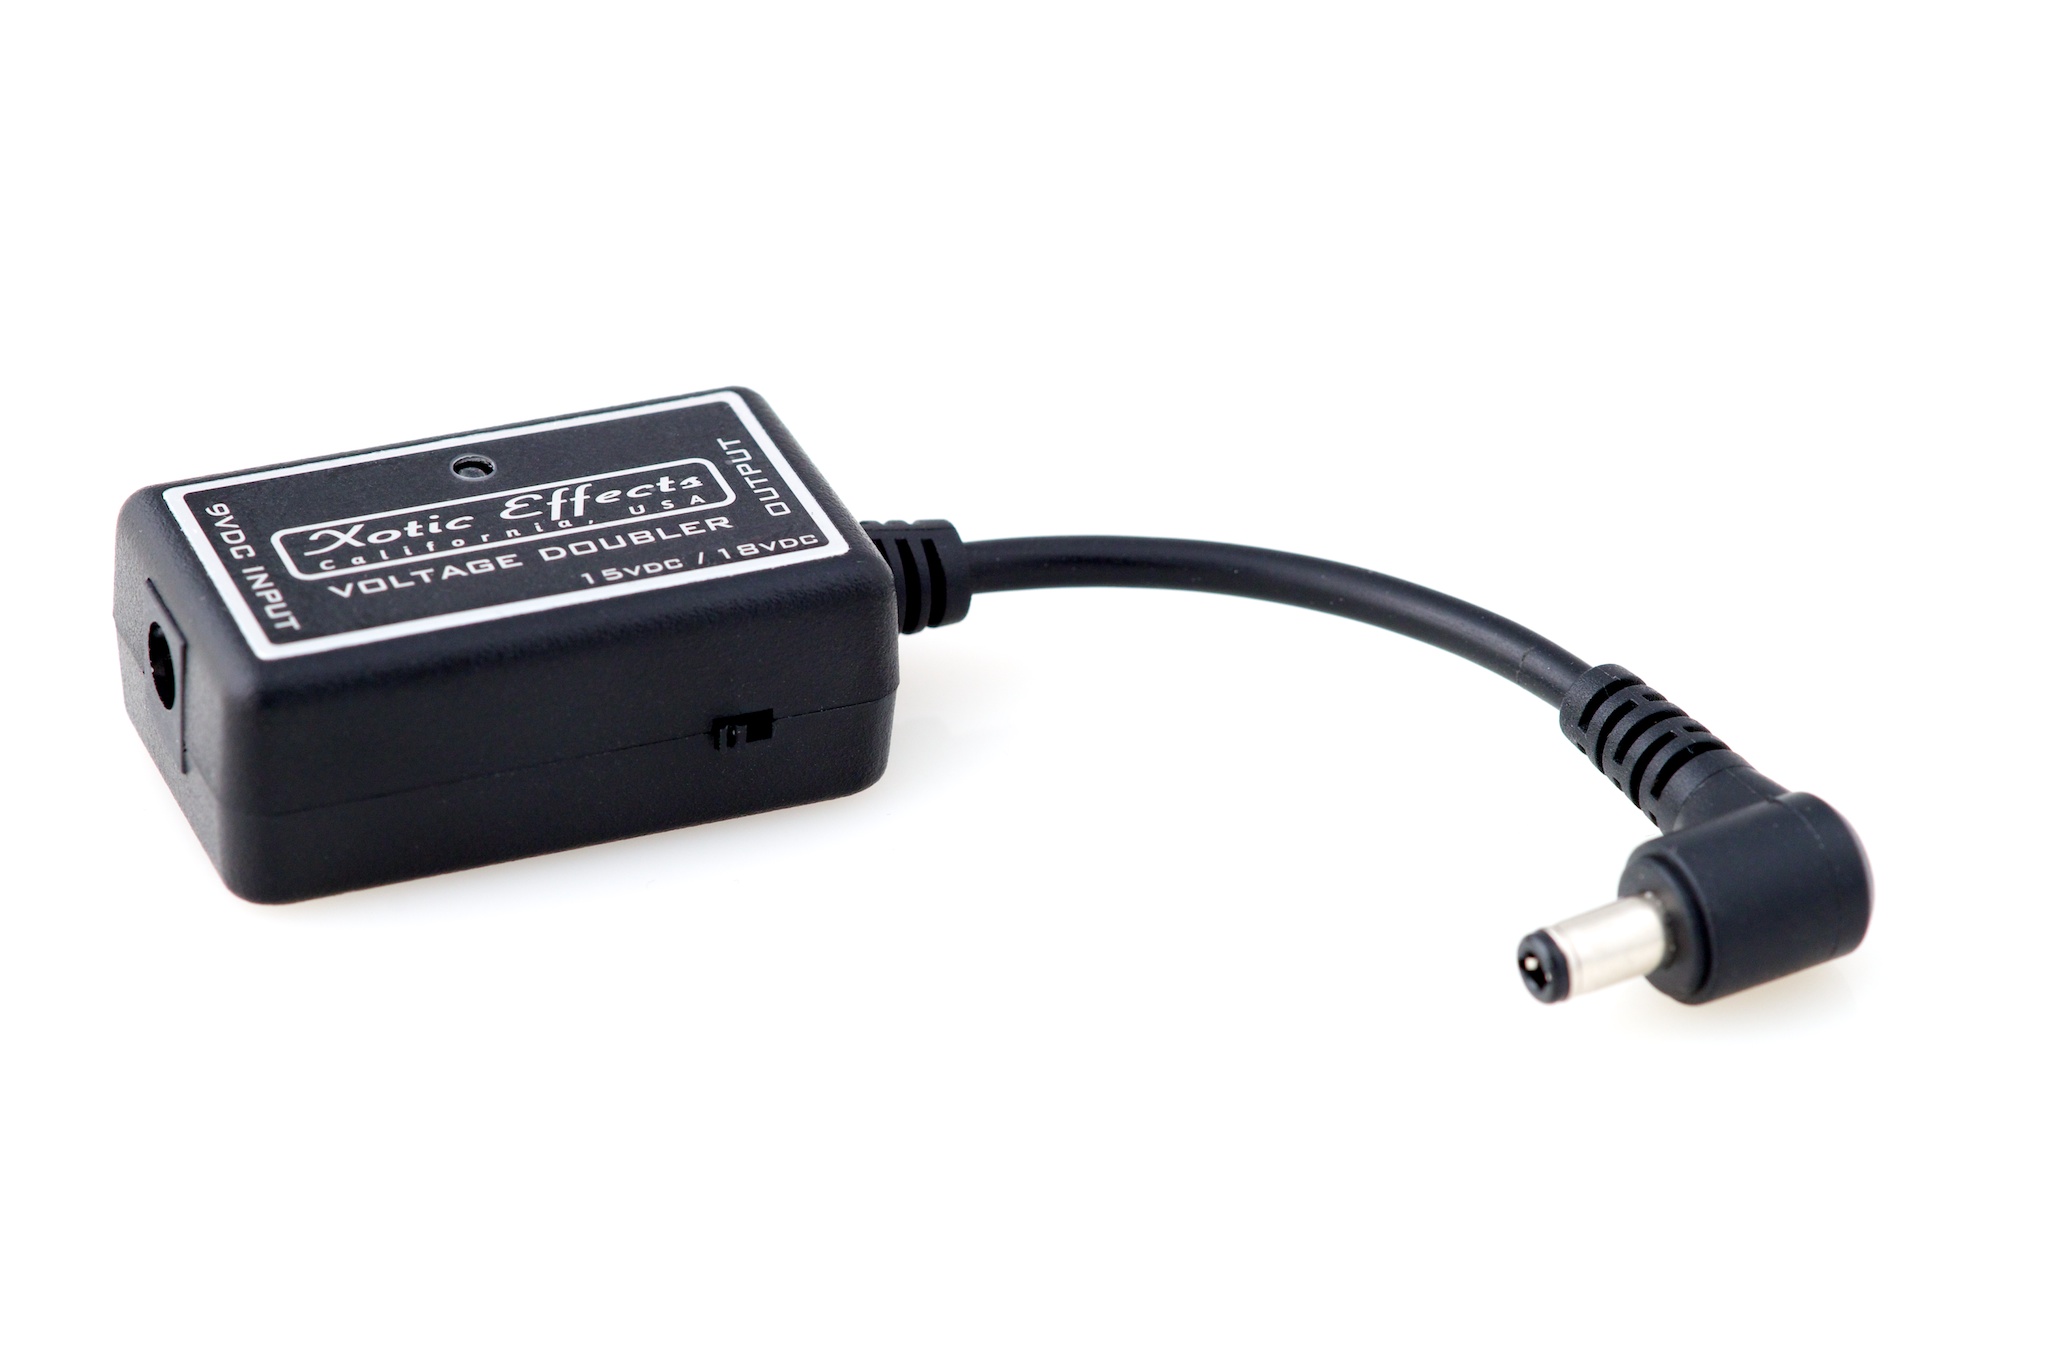 Xotic Voltage Doubler to wysoce prosty w obsłudze konwerter z 9V do 15V lub 18V DC